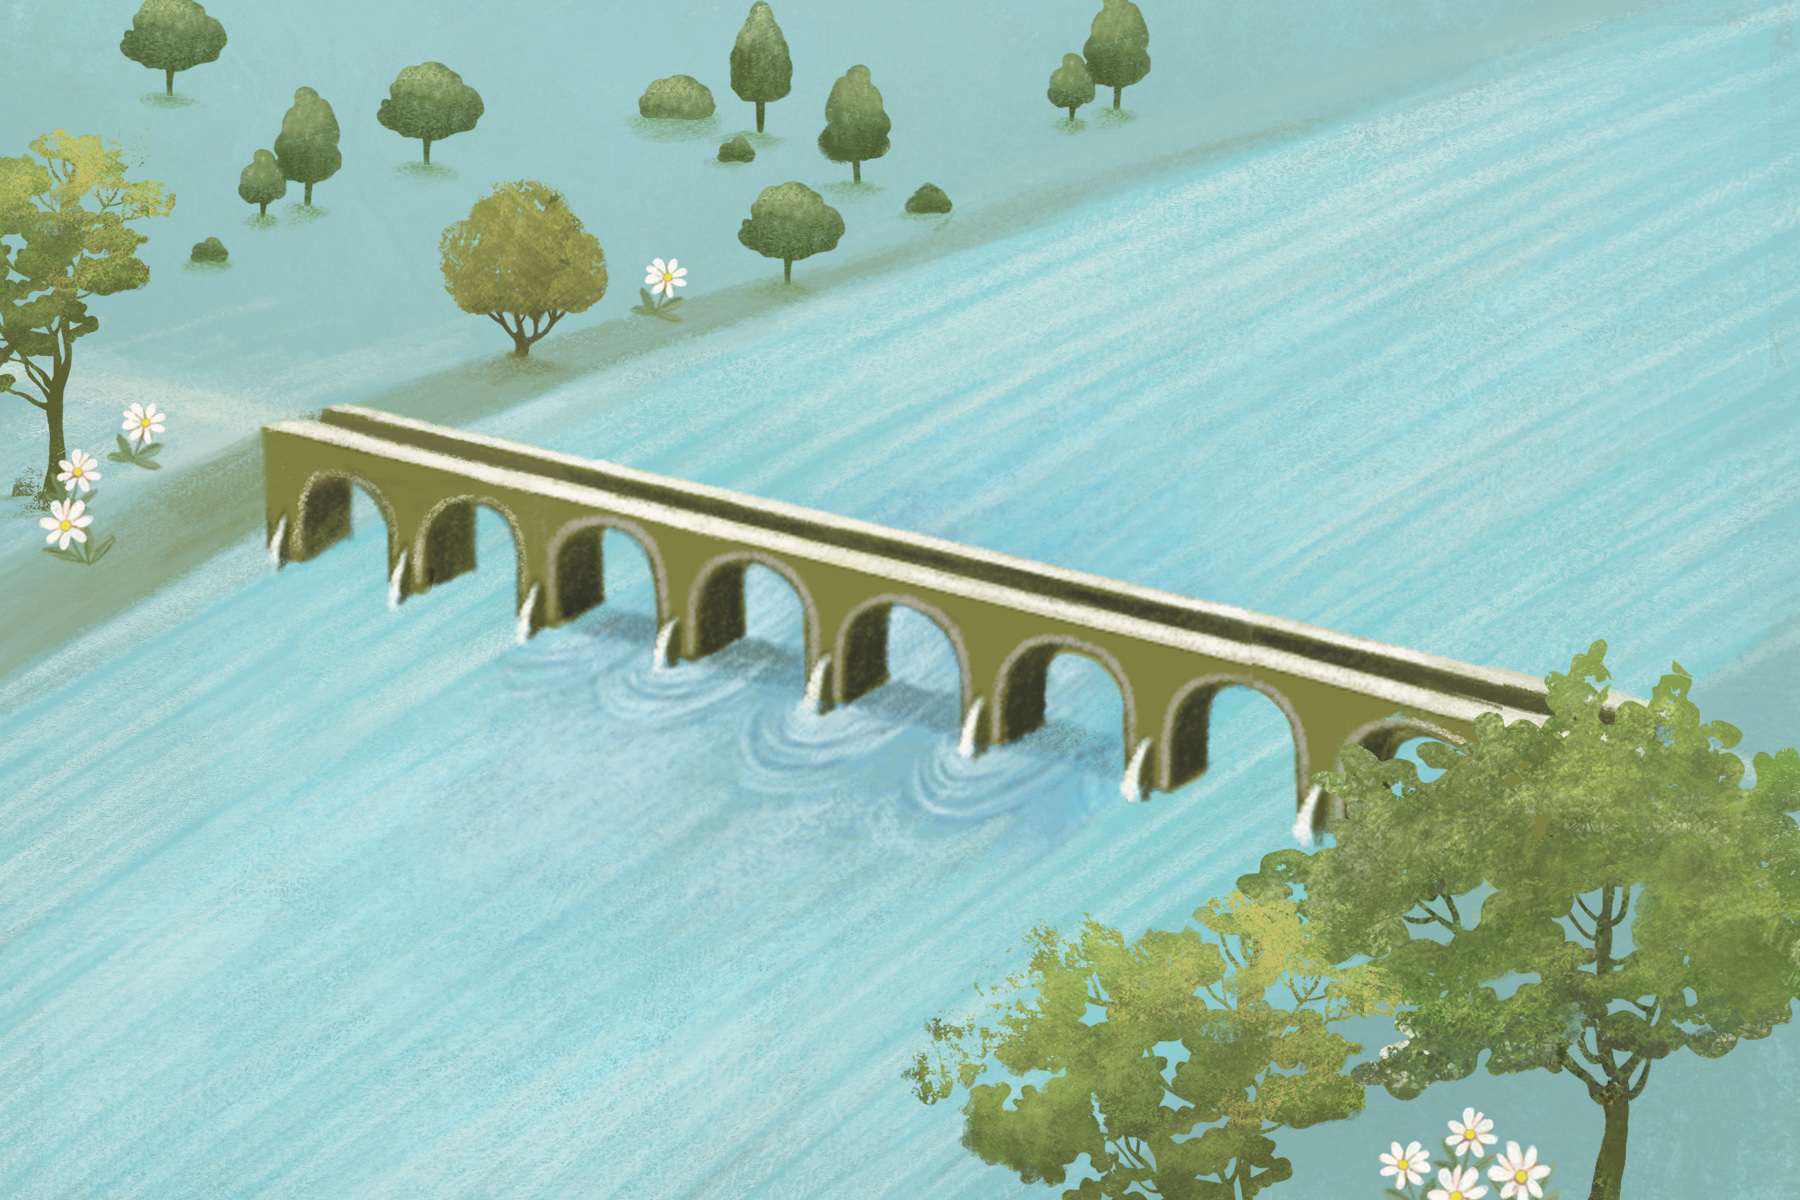 Sai dove trovare un ponte romano nascosto in un fiume?